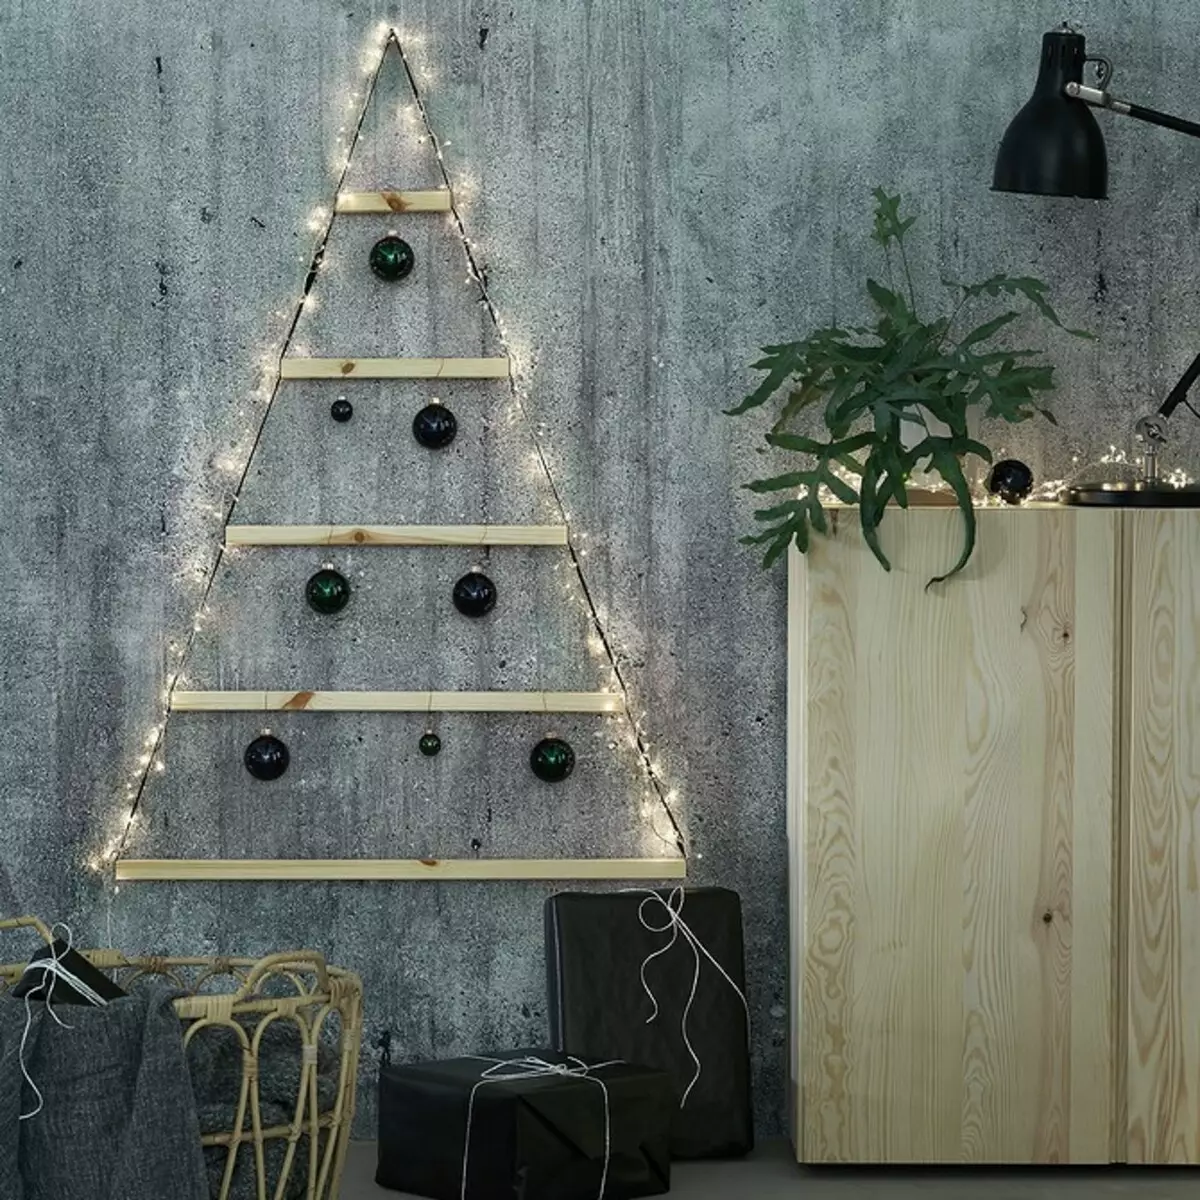 Puoi scegliere: 9 decorazioni natalizie da IKEA 1312_17